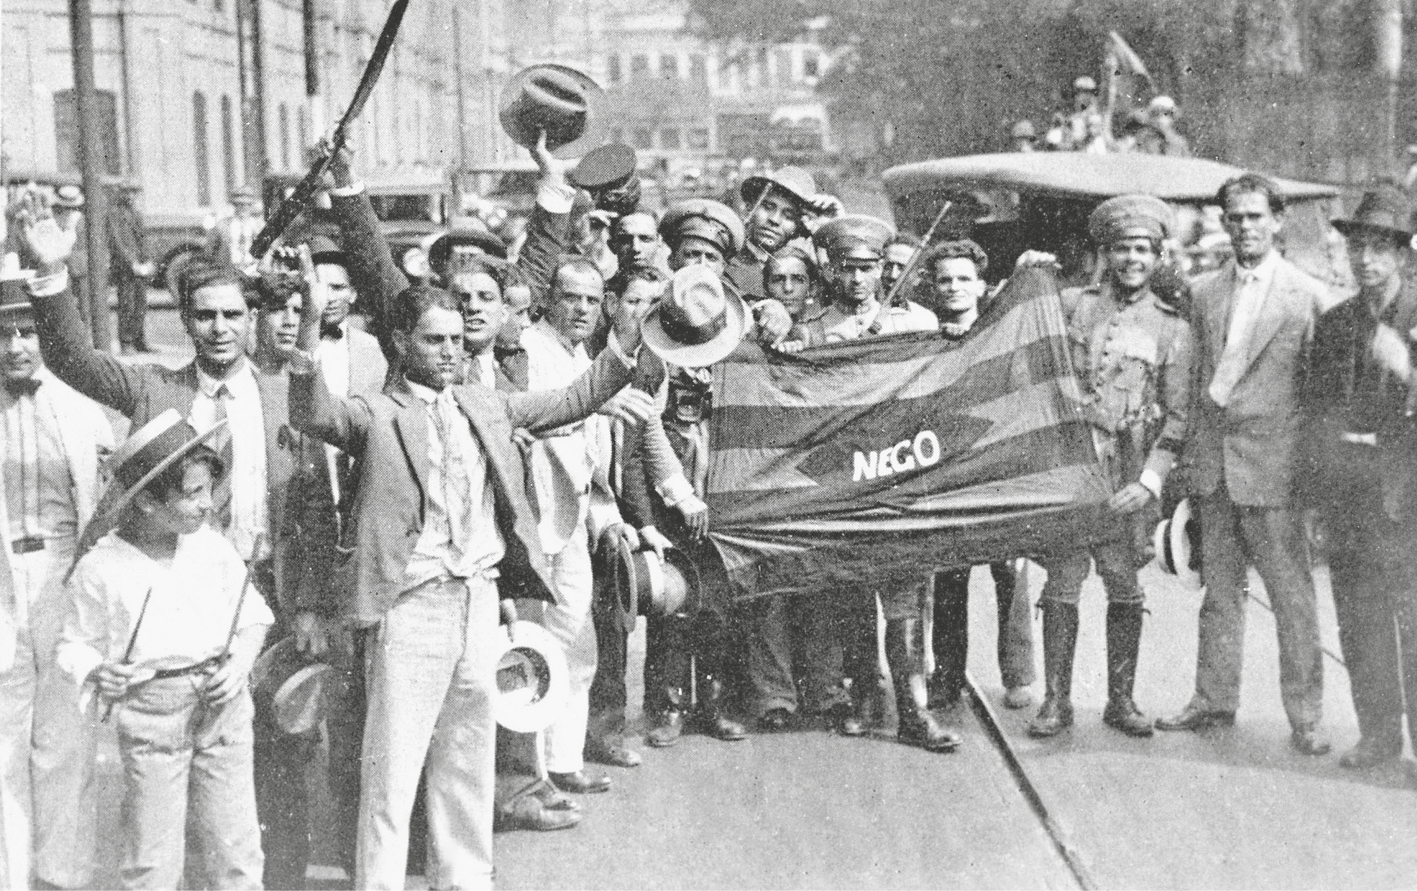 Fotografia em preto e branco. Manifestantes na rua, agrupados, segurando uma bandeira com listras horizontais e a palavra NEGO no centro. Alguns estão com os braços erguidos.